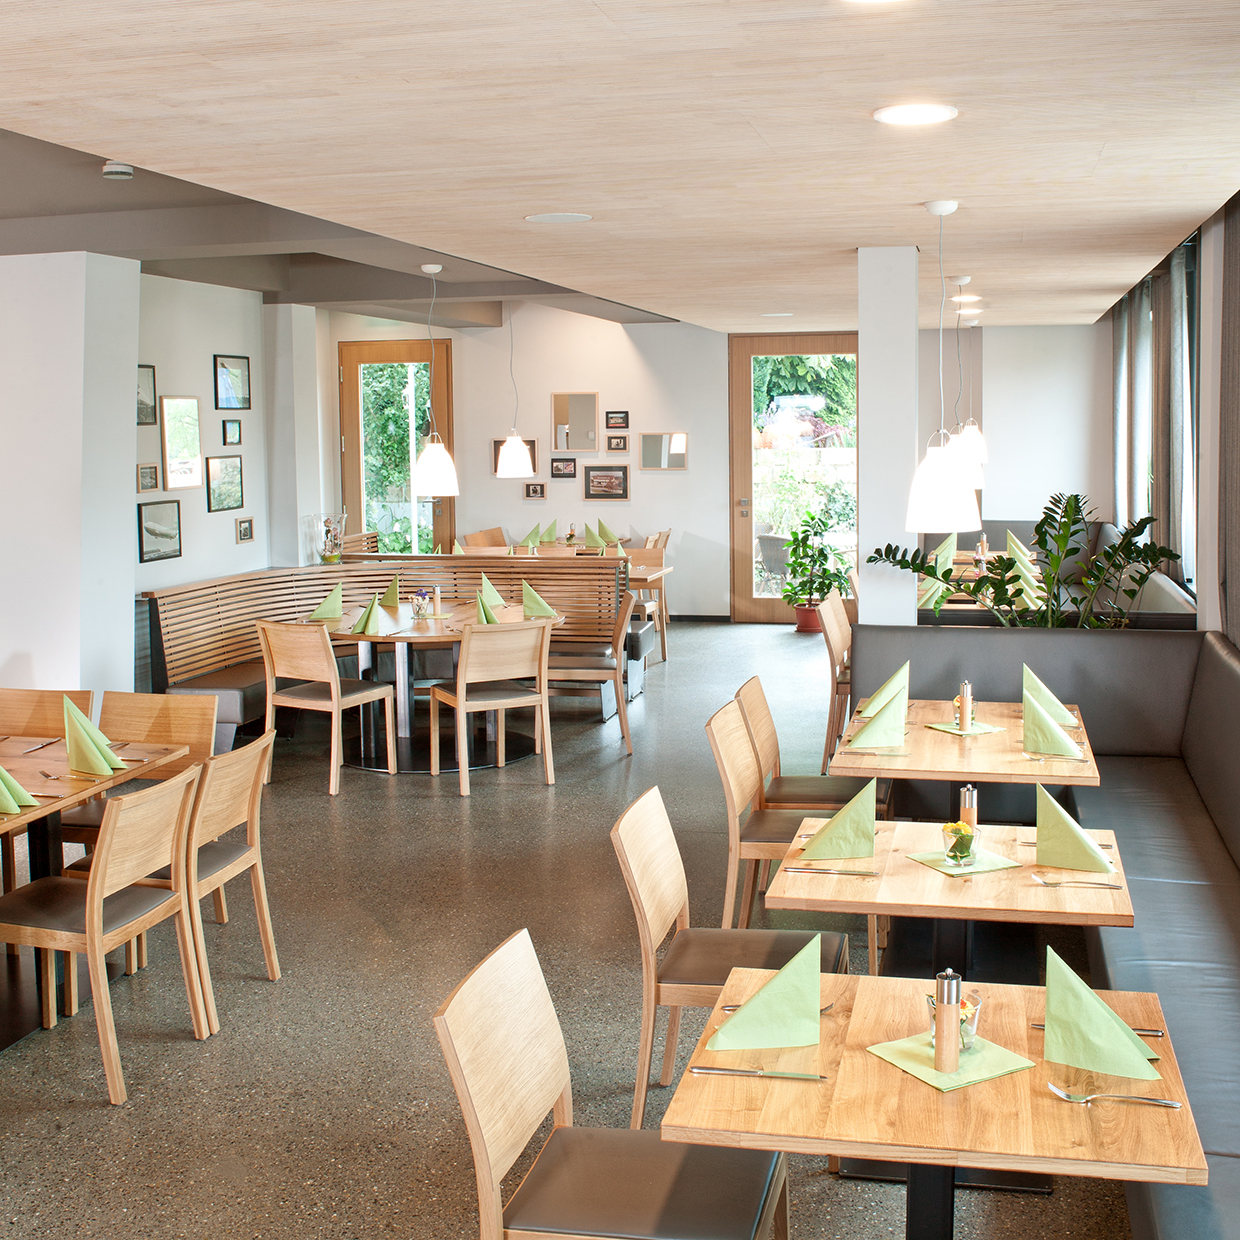 Restaurant | Hotel | Restaurant WALDHORN Friedrichshafen